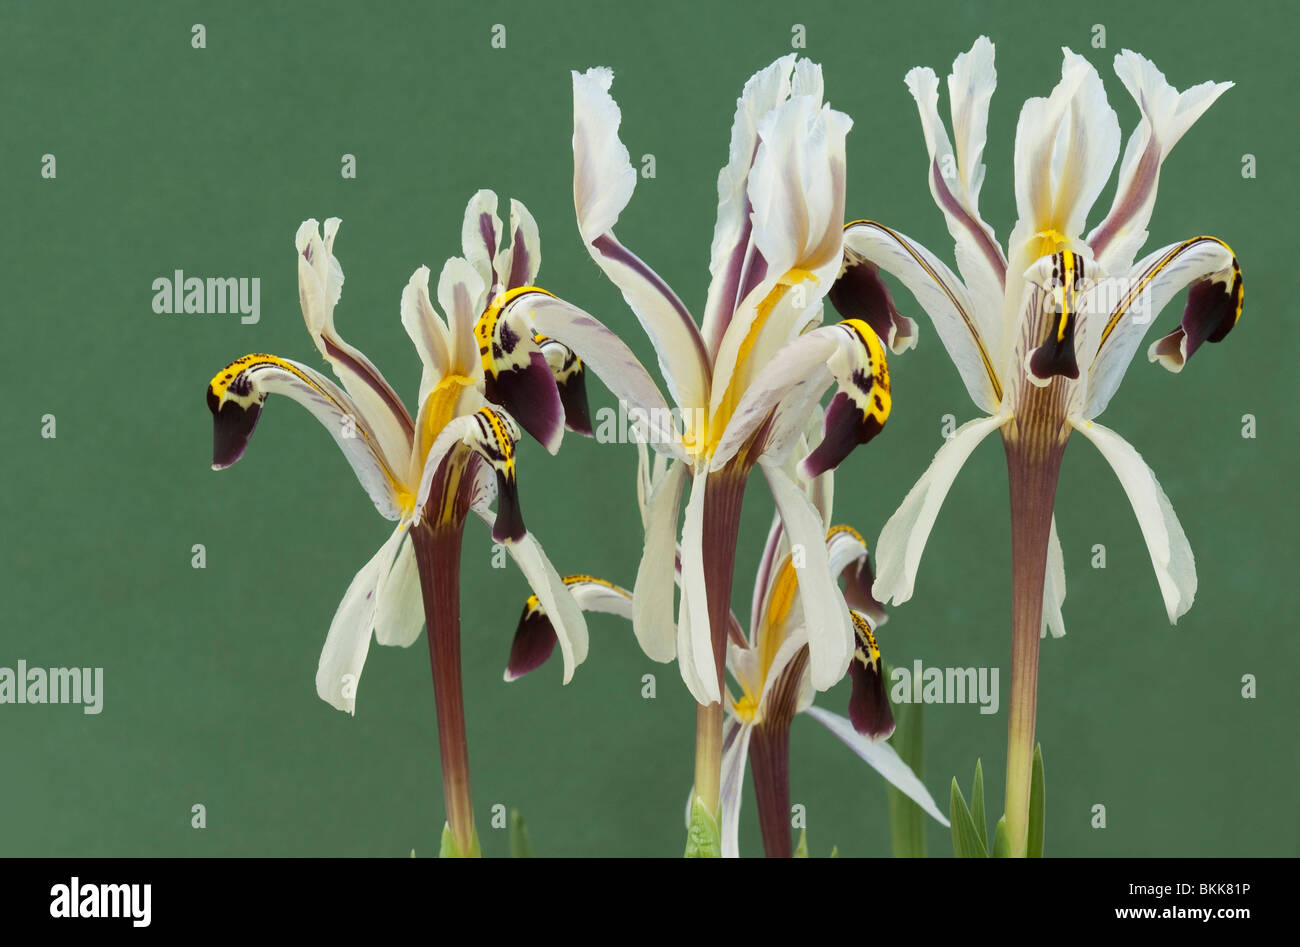 TÌNH YÊU CÂY CỎ ĐV 6 - Page 92 Iris-iris-nicolai-flowers-BKK81P